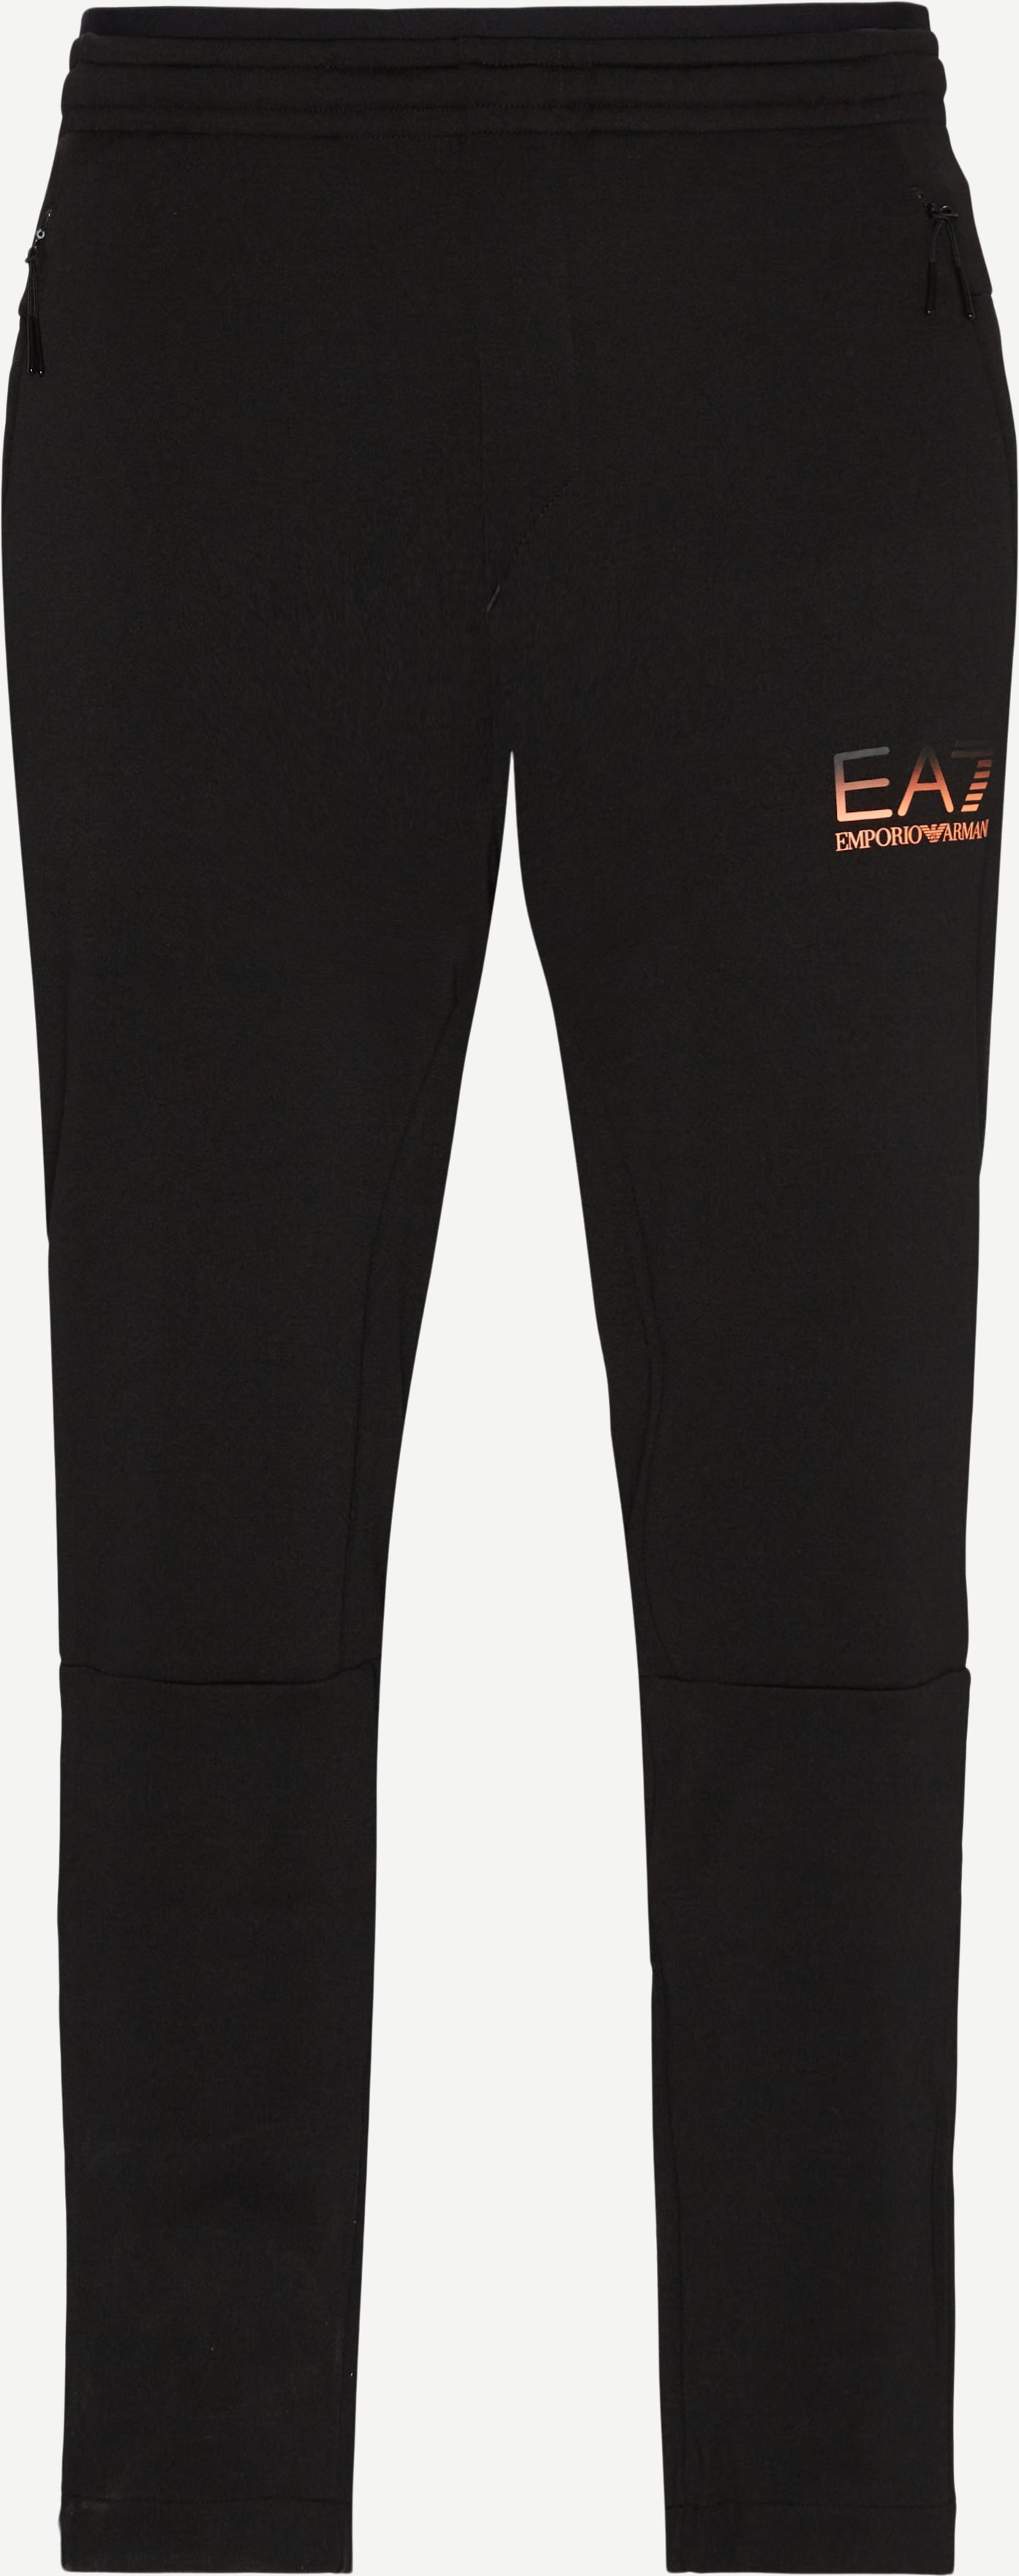 6KPP52 Sweatpants - Trousers - Regular fit - Black